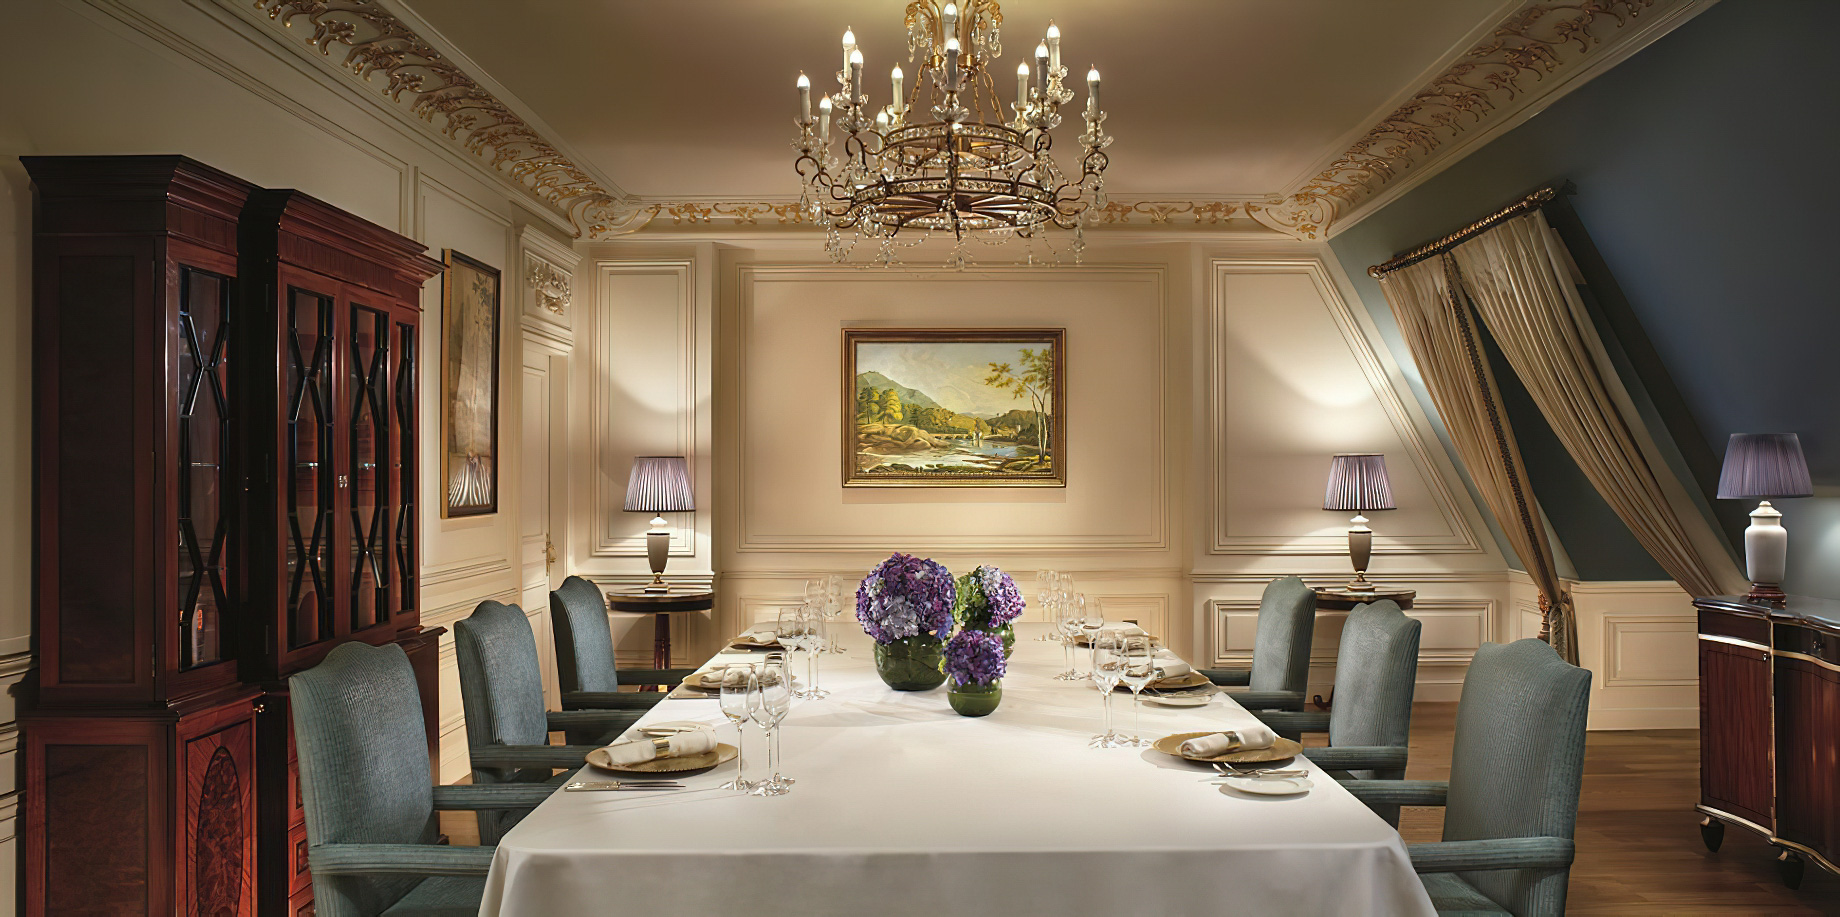 The Ritz-Carlton, Tianjin Hotel - Tianjin, China - The Ritz-Carlton Suite Dining Room